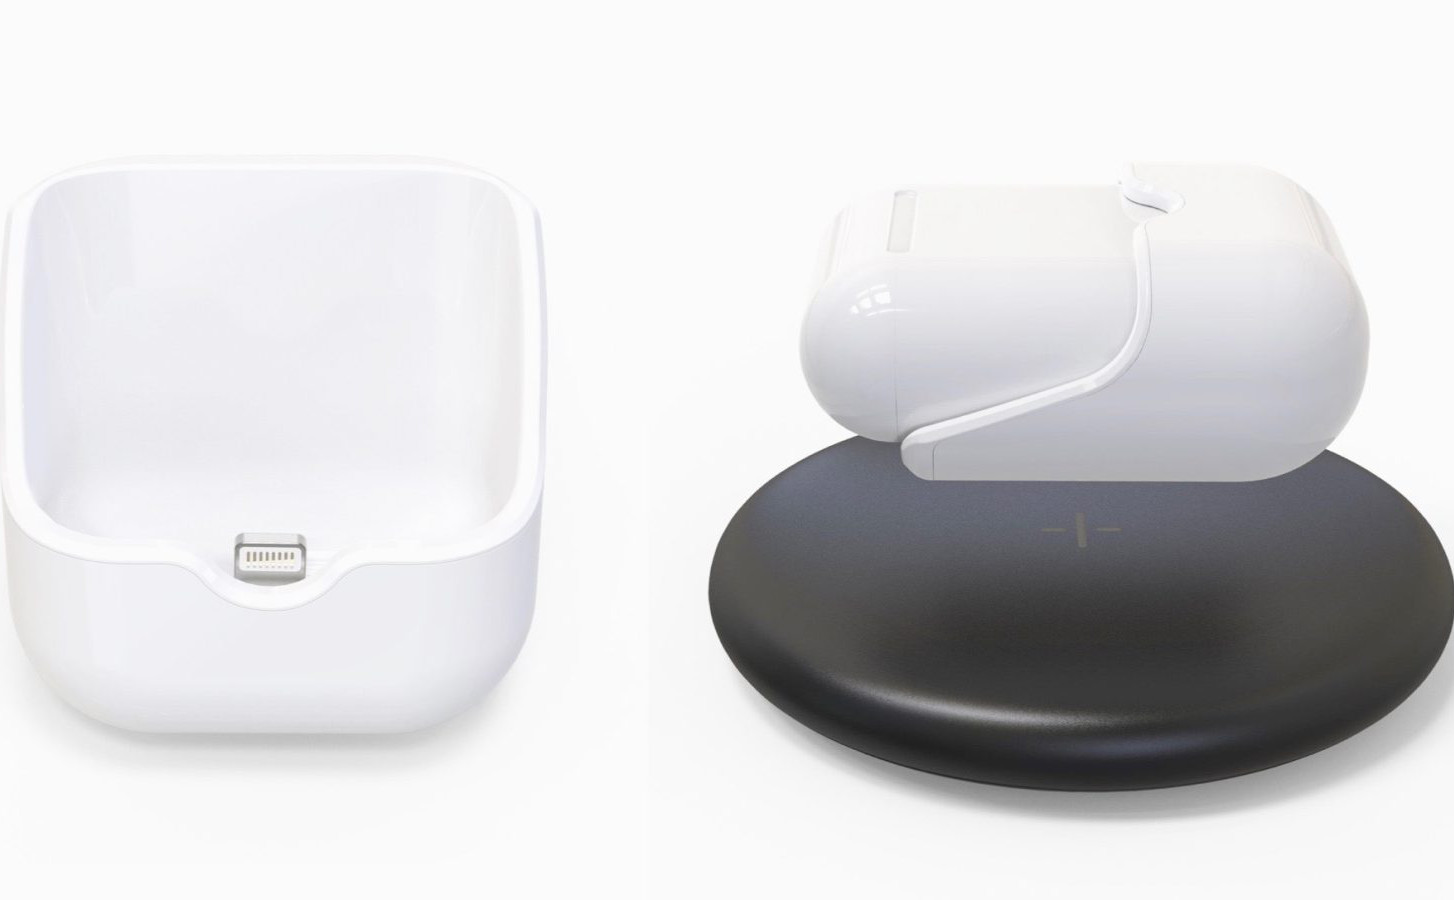 HyperJuice Wireless Charger: Sạc không dây chuẩn Qi cho AirPods, ngôn ngữ thiết kế Apple, giá 50$